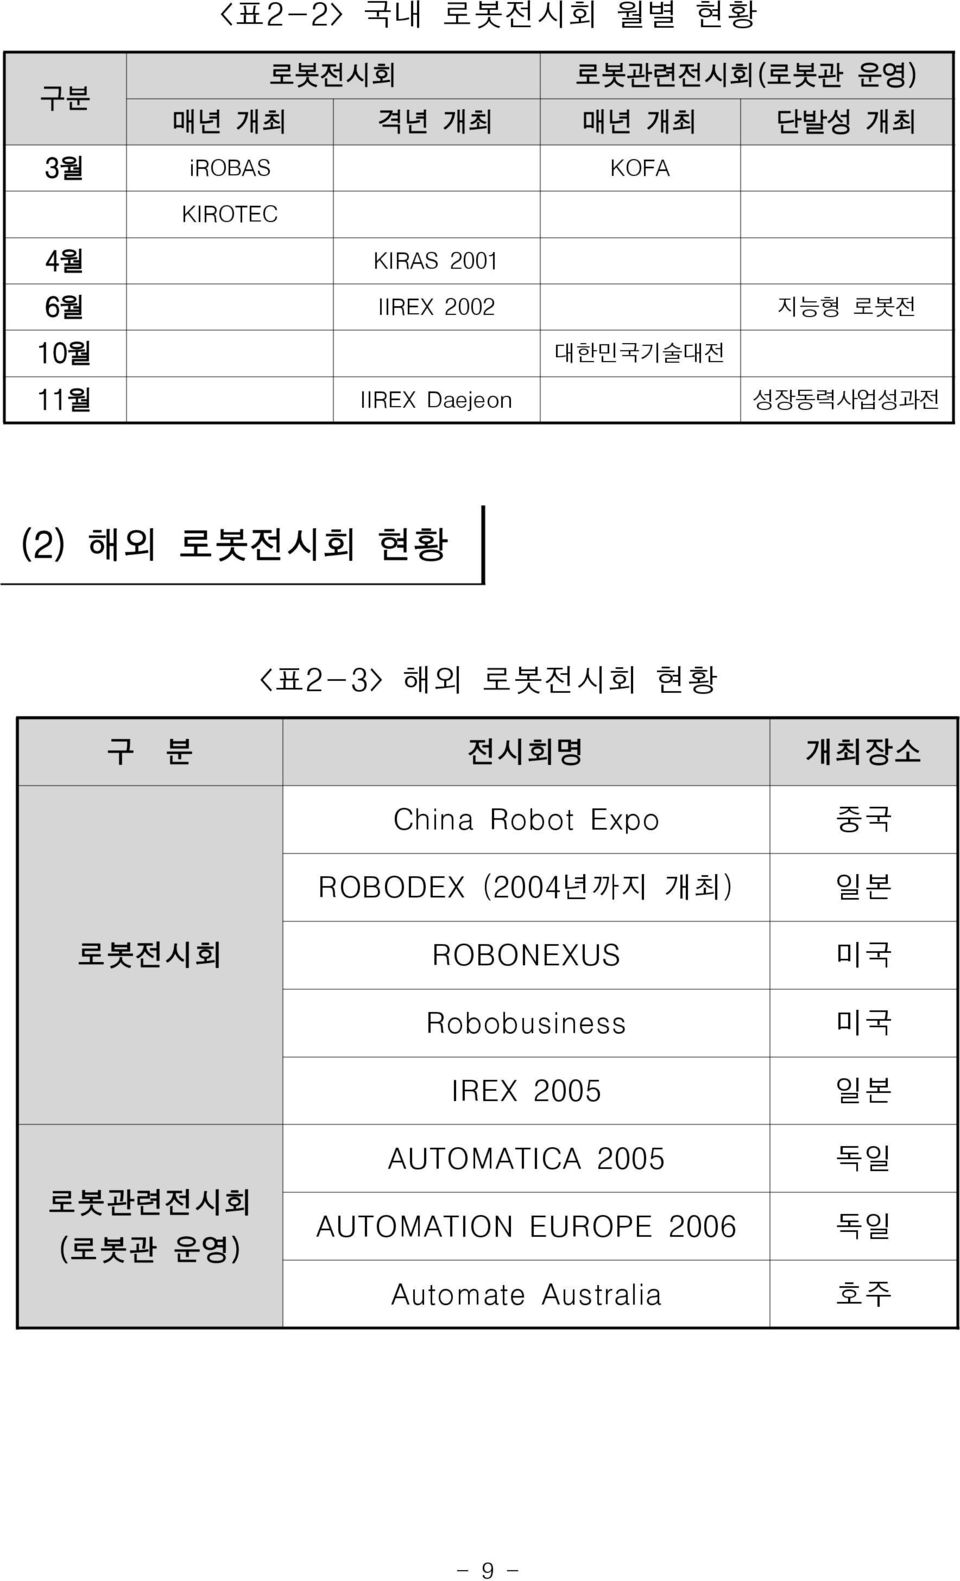 로봇전시회 현황 구 분 전시회명 개최장소 로봇전시회 로봇관련전시회 (로봇관 운영) China Robot Expo ROBODEX (2004년까지 개최) ROBONEXUS